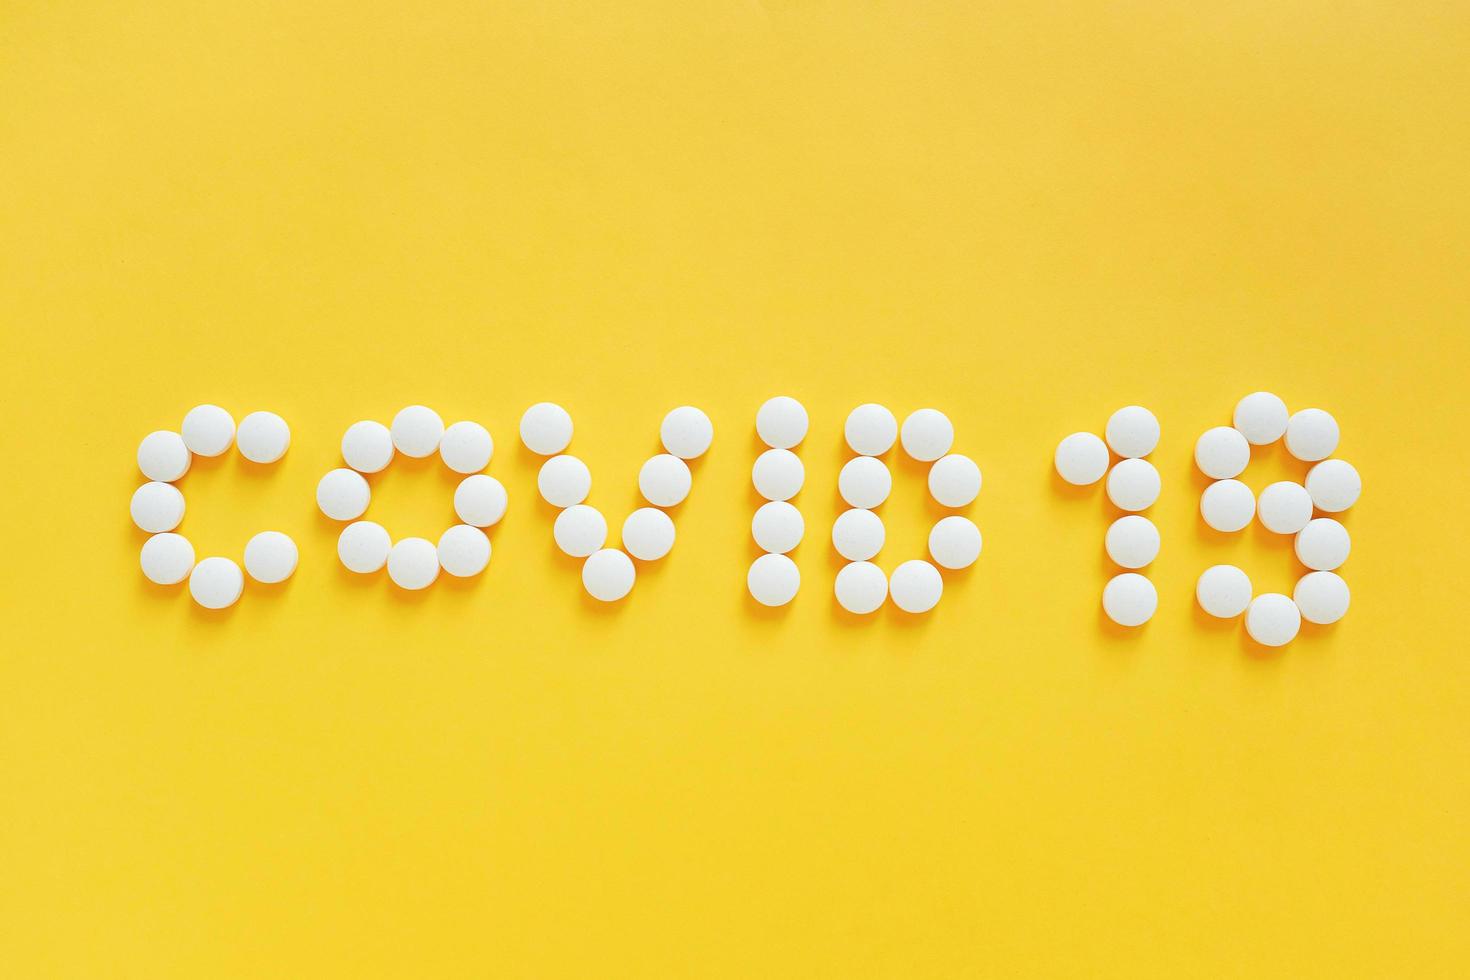 platt läggning av medicinpiller formar som ordet covid 19 på gul bakgrund, hälsovårdskoncept och förhindrar spridningen av pandemi covid-19 och coronavirus foto